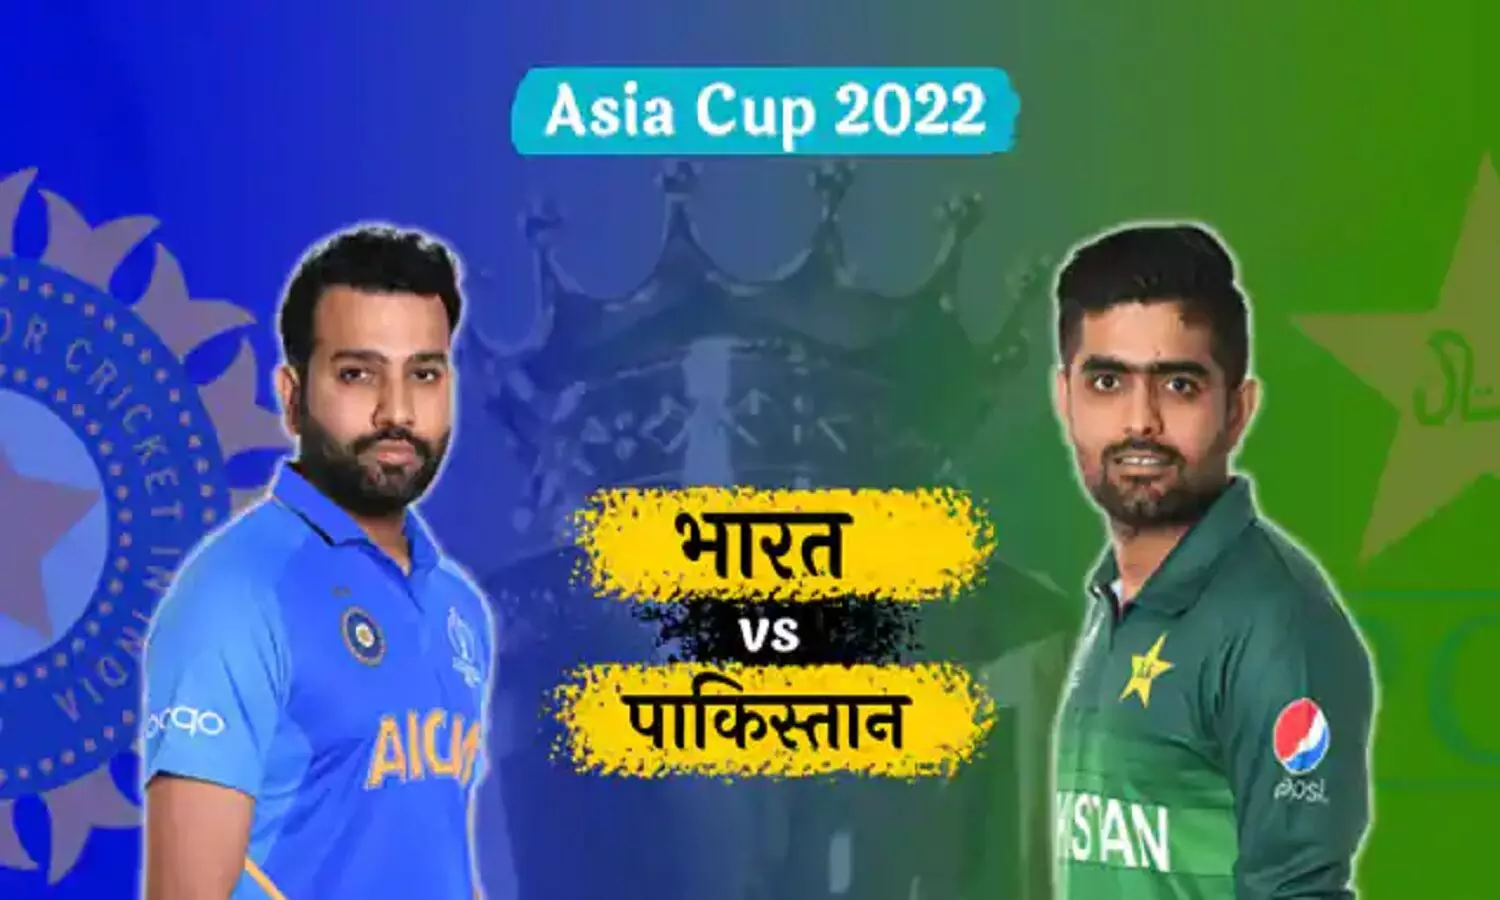 IND Vs PAK Next Match: India Vs Pakistan का अगला मैच 4 सितम्बर को होना है, देखें दोनों टीमों की प्लेइंग 11